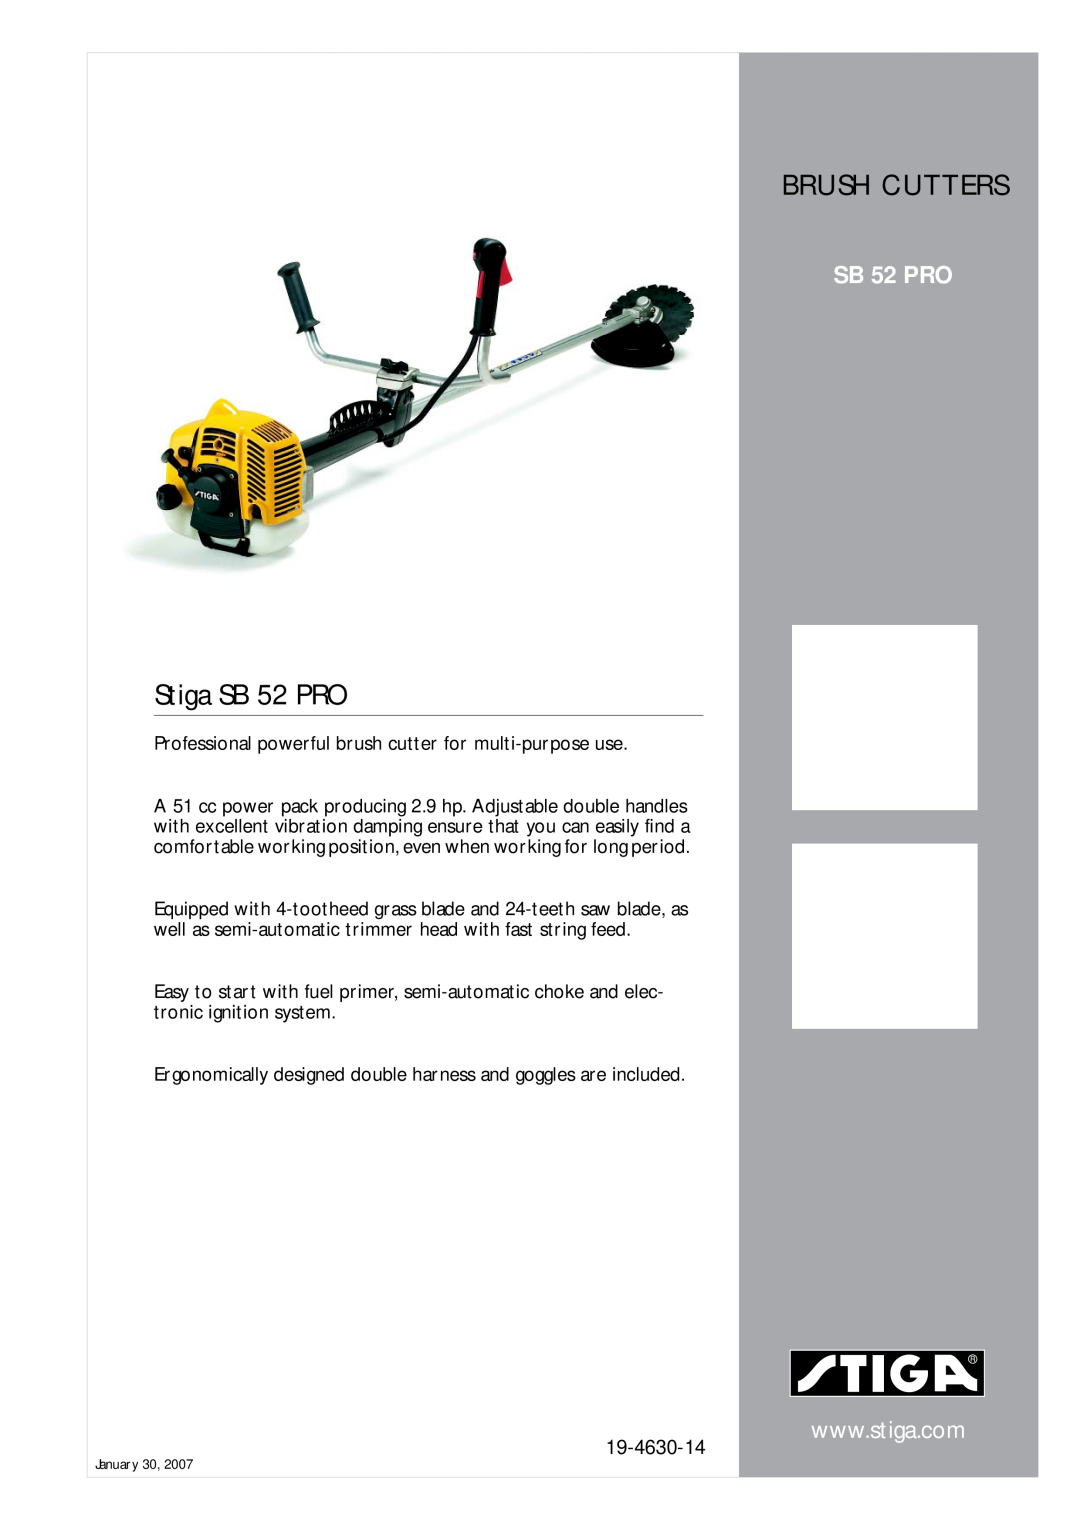 Stiga manual Brush Cutters, Stiga SB 52 PRO, 19-4630-14 